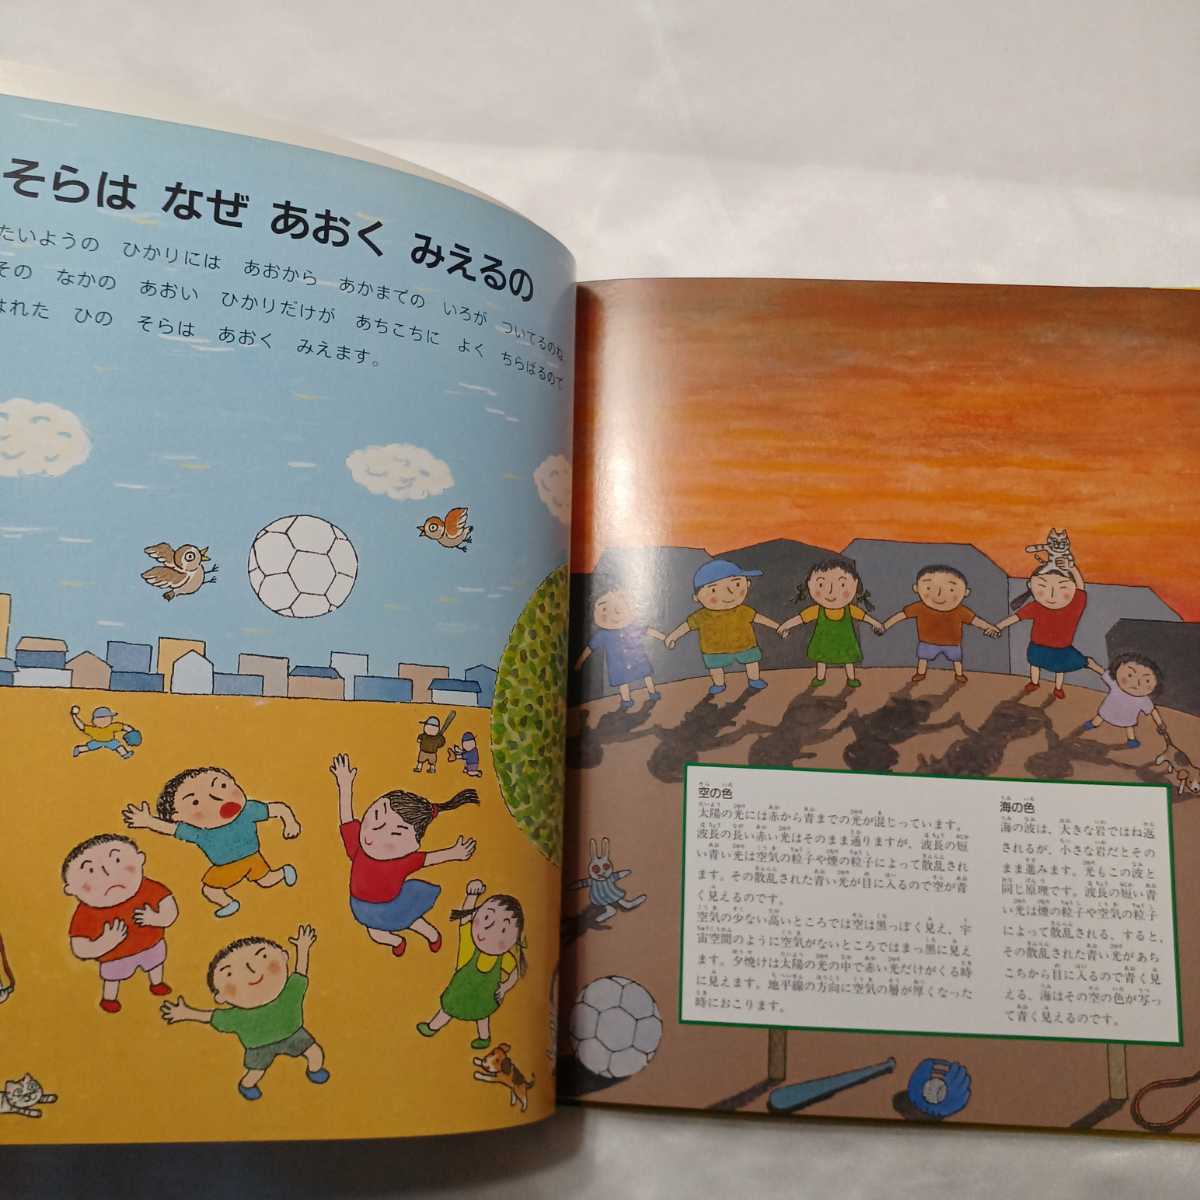 zaa-415♪日本学校図書株式会社のなぜなにブック〈10〉きしょう・ちきゅう・うちゅう　日本学校図書株式会社　2008/01/10_画像4